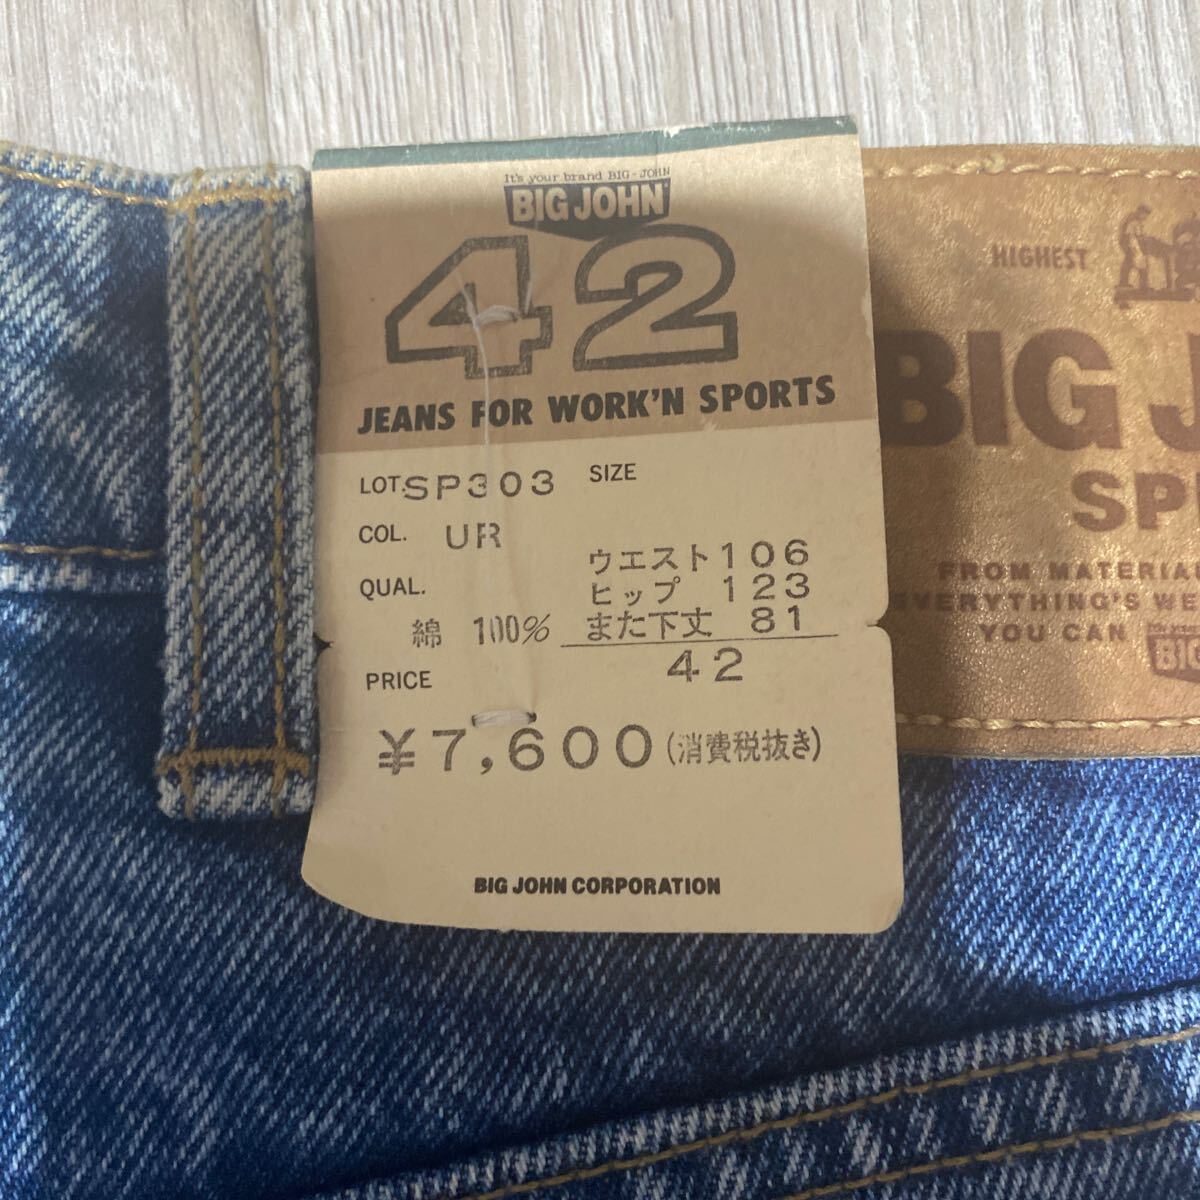  бесплатная доставка подлинная вещь не использовался джинсы гарантия - имеется [BIG JHON 303 W42]3L размер 